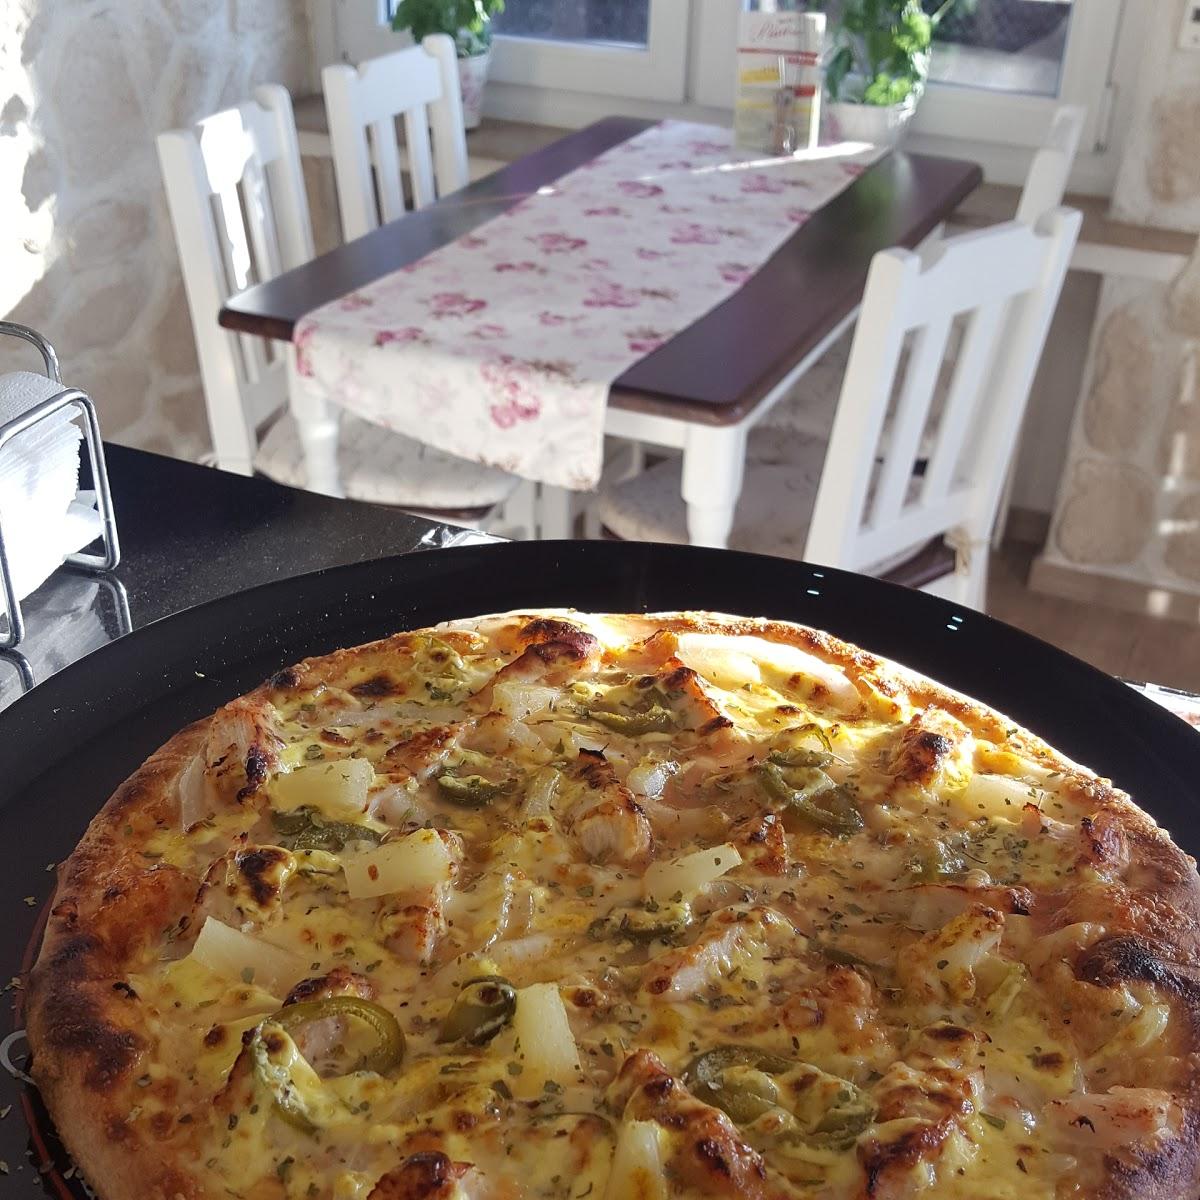 Restaurant "Pizzeria Pisa" in Hamm